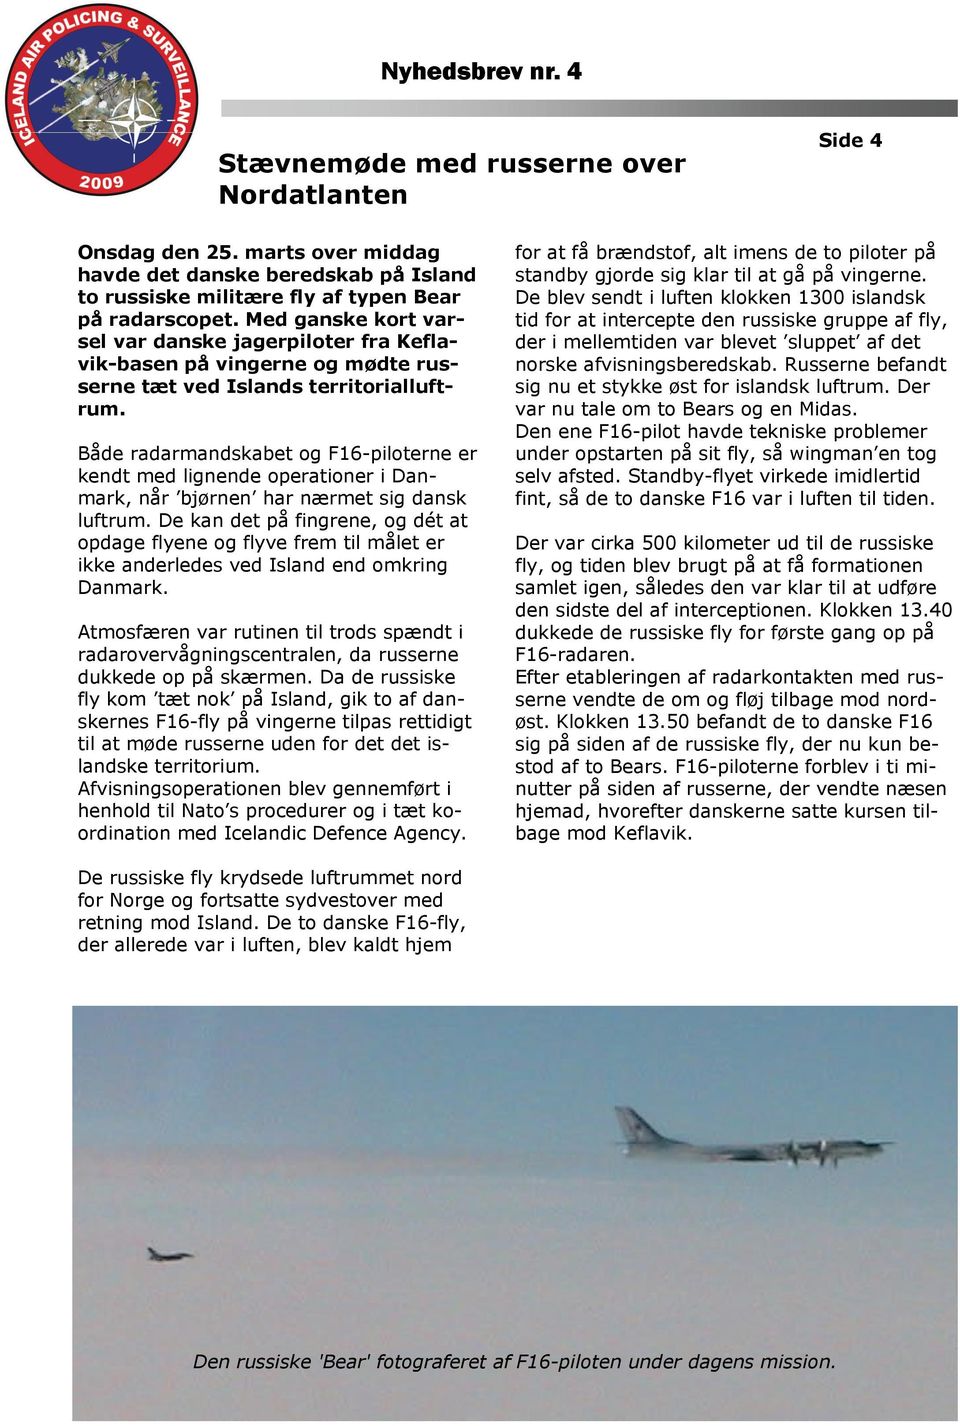 Både radarmandskabet og F16-piloterne er kendt med lignende operationer i Danmark, når bjørnen har nærmet sig dansk luftrum.